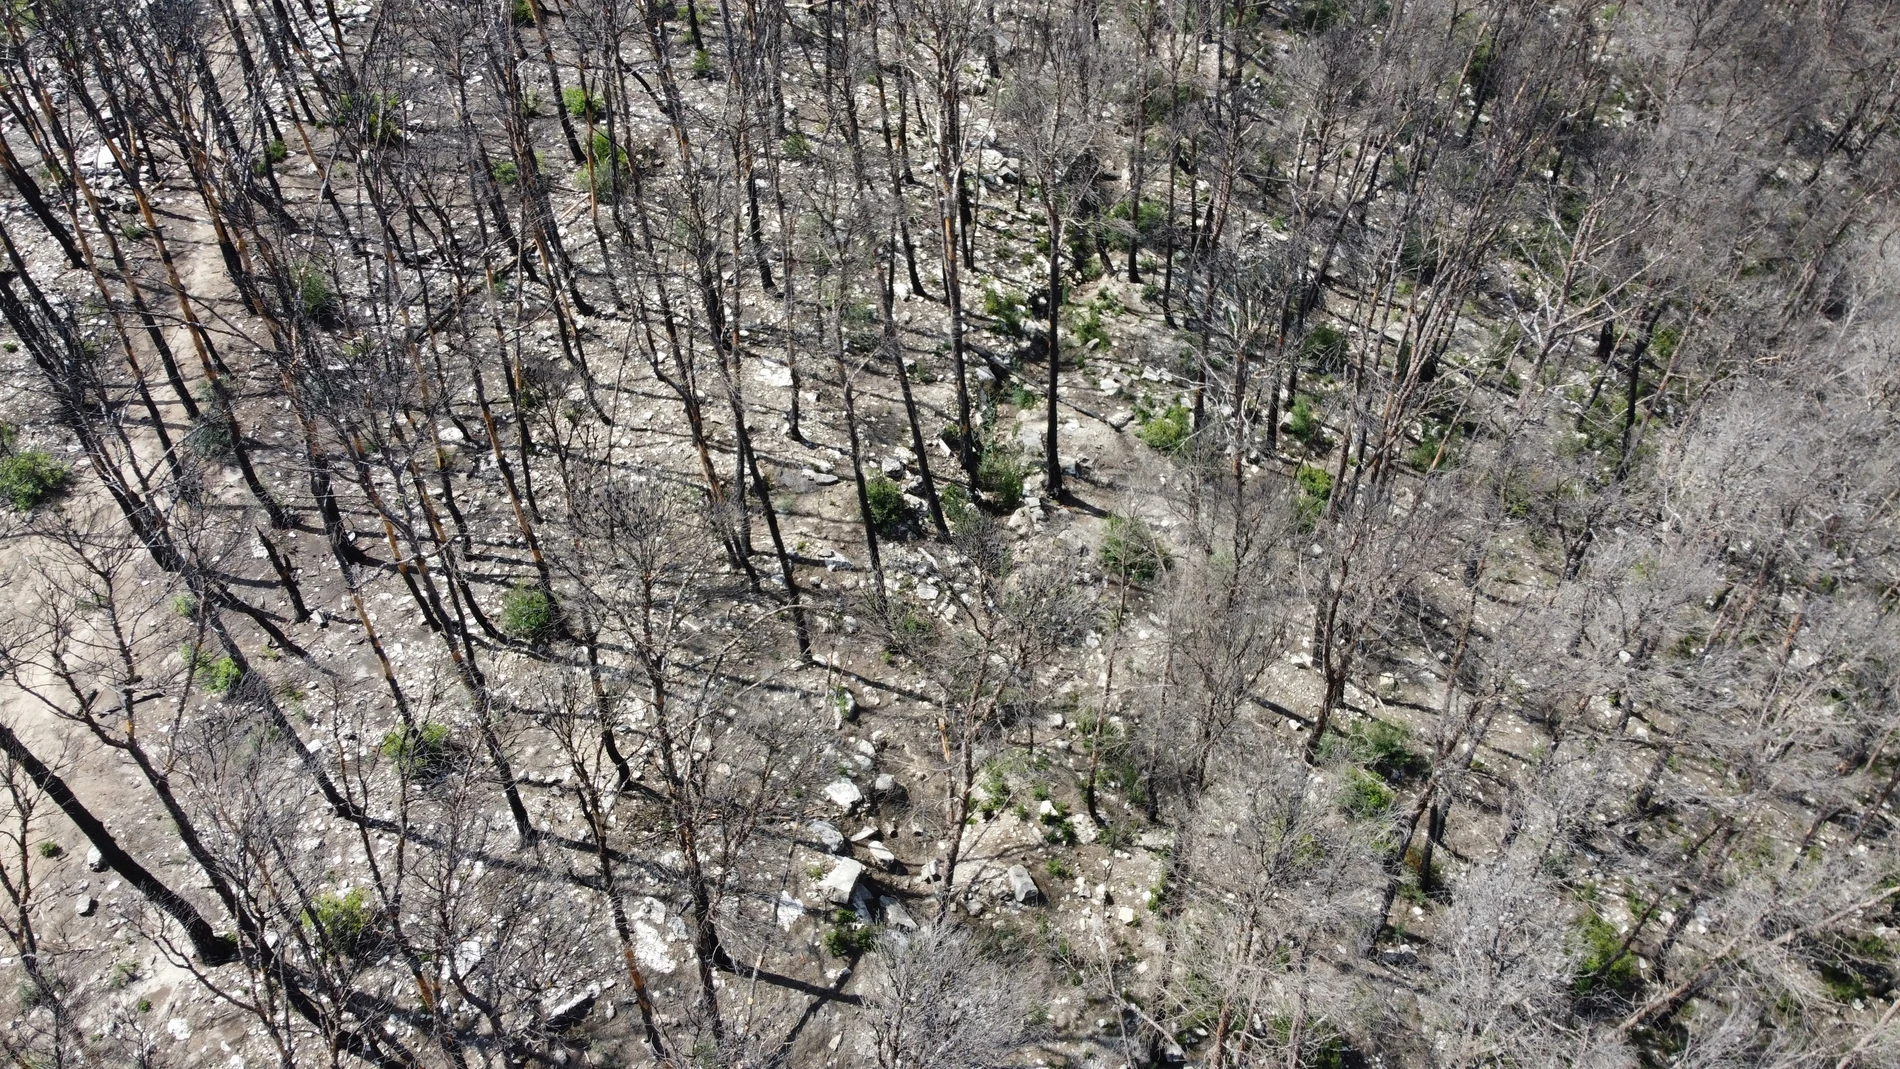 Un dron de la Generalitat rastrea 400 hectáreas quemadas en Corbera d'Ebre en busca de restos óseos de la Guerra Civil.